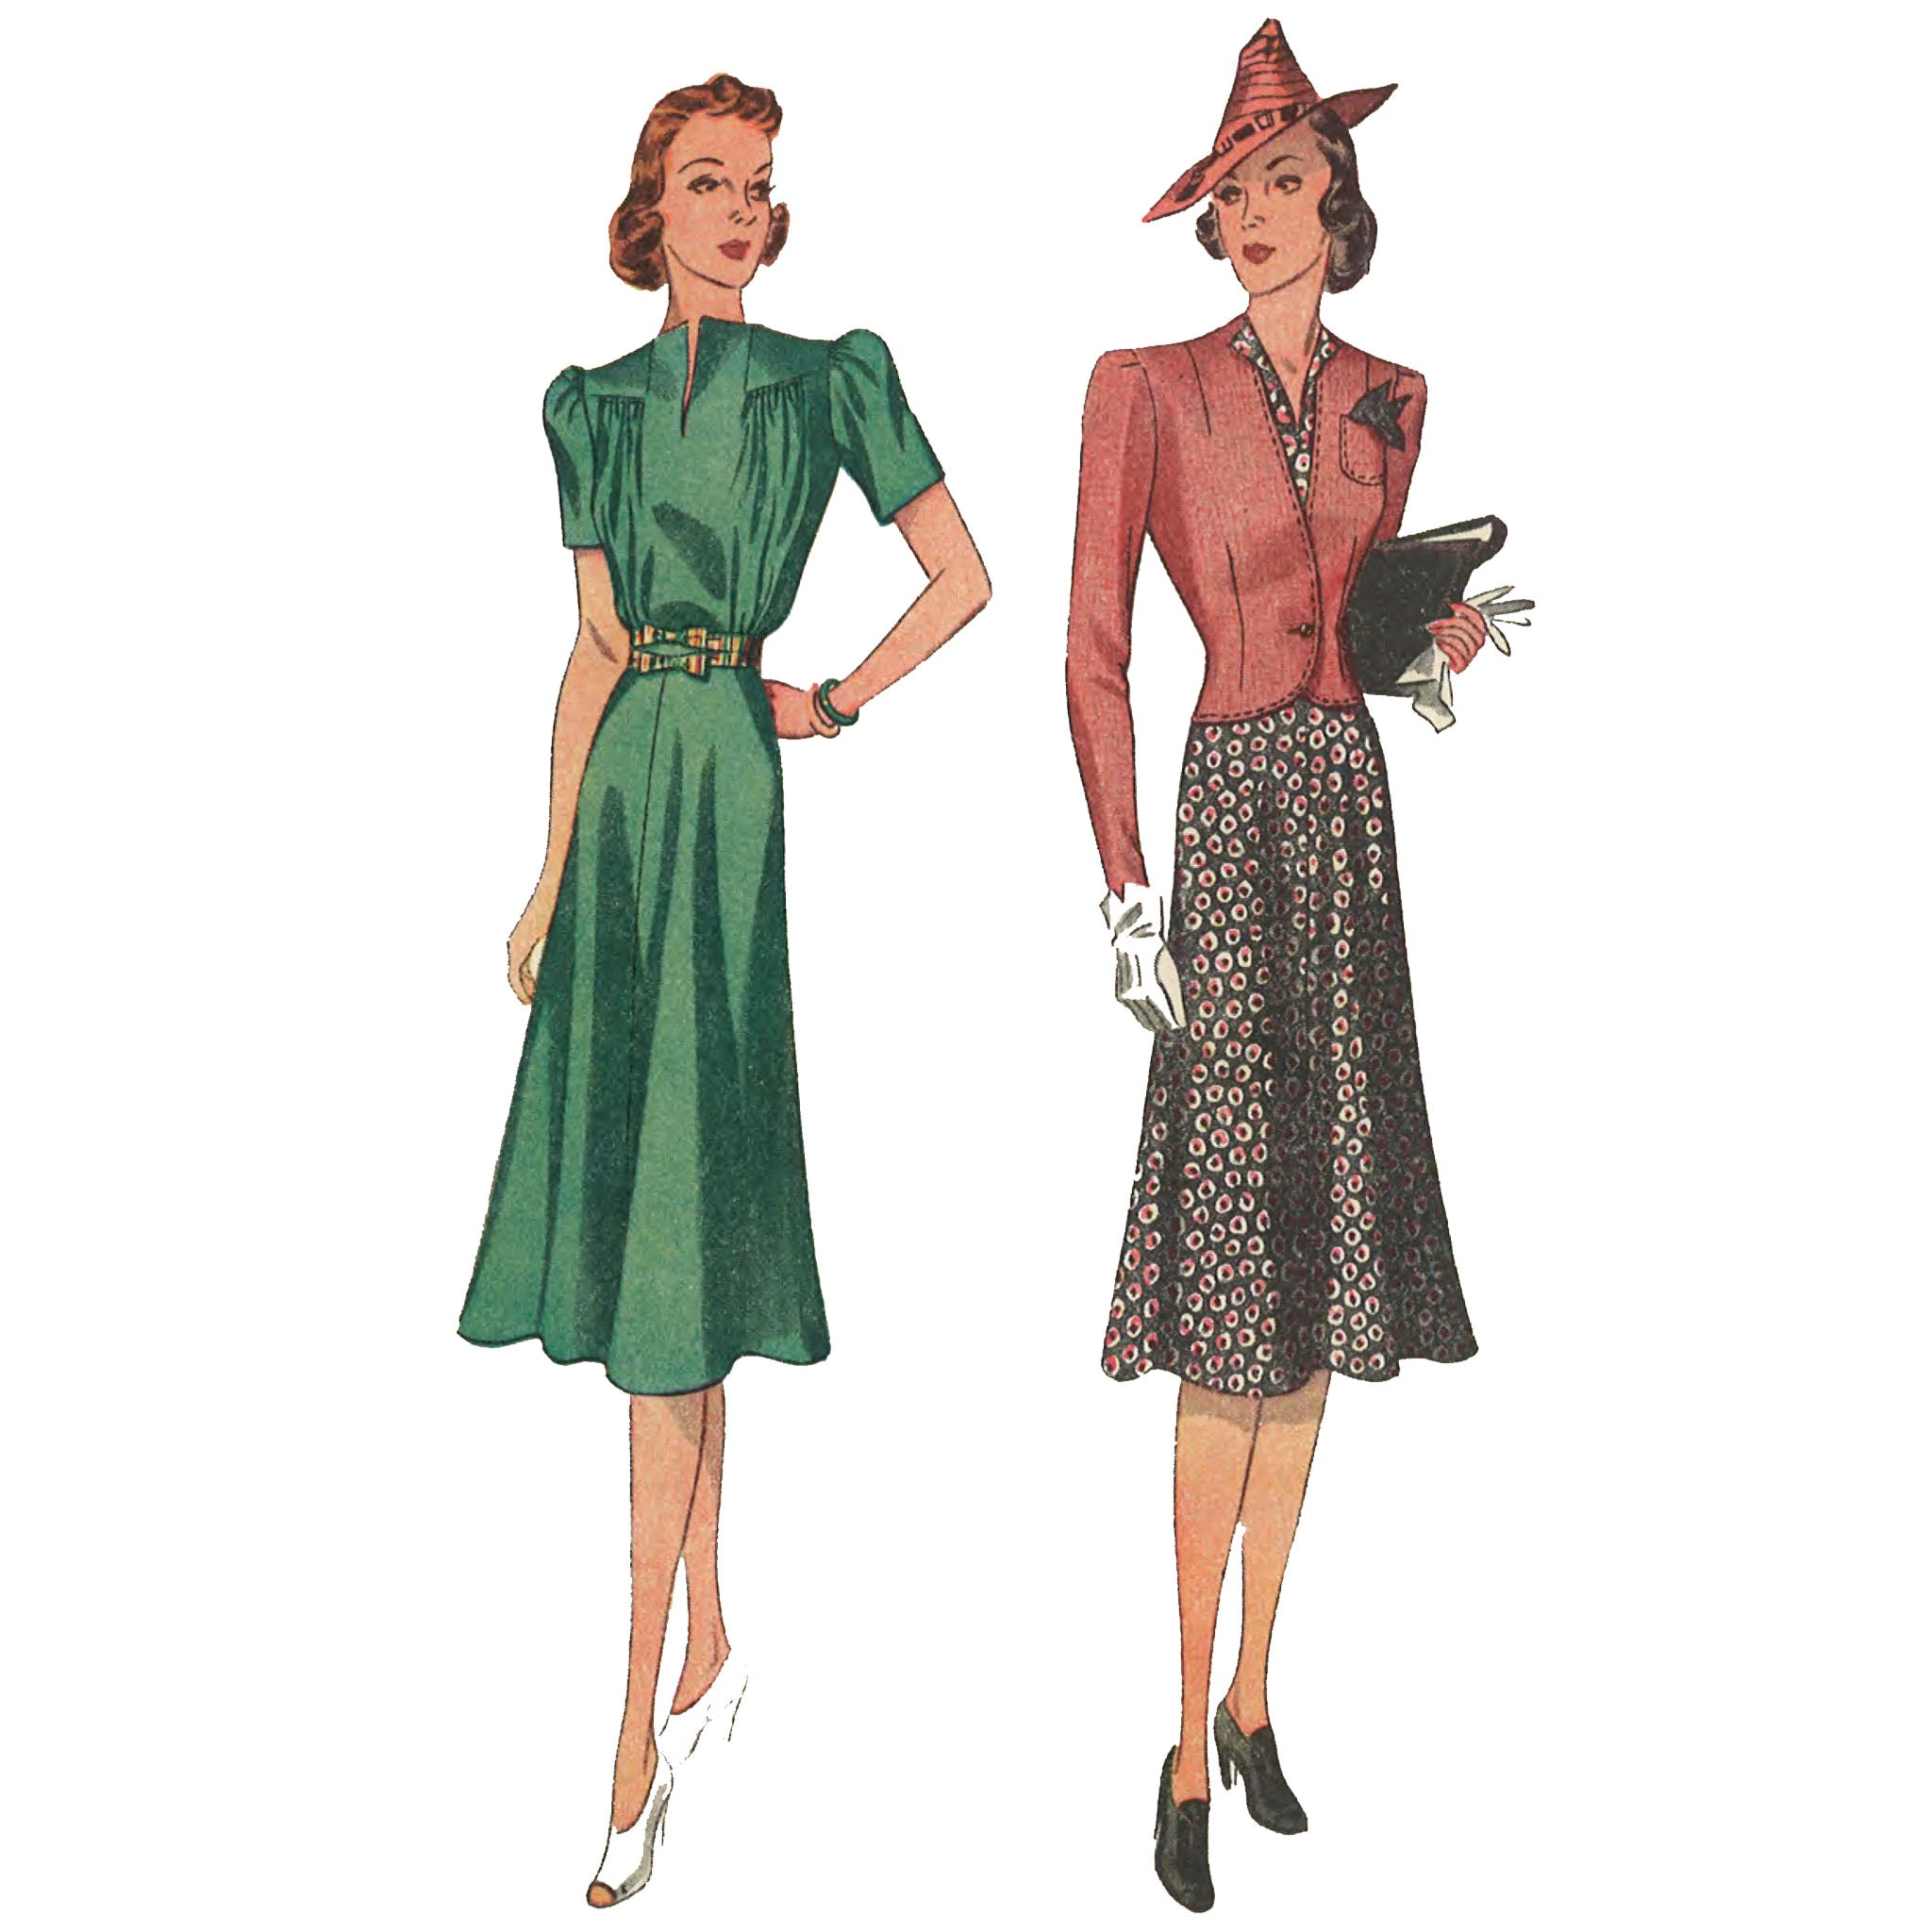 1930 年代の縫製パターン: ドレスとジャケット - バスト 30 インチ (76cm)